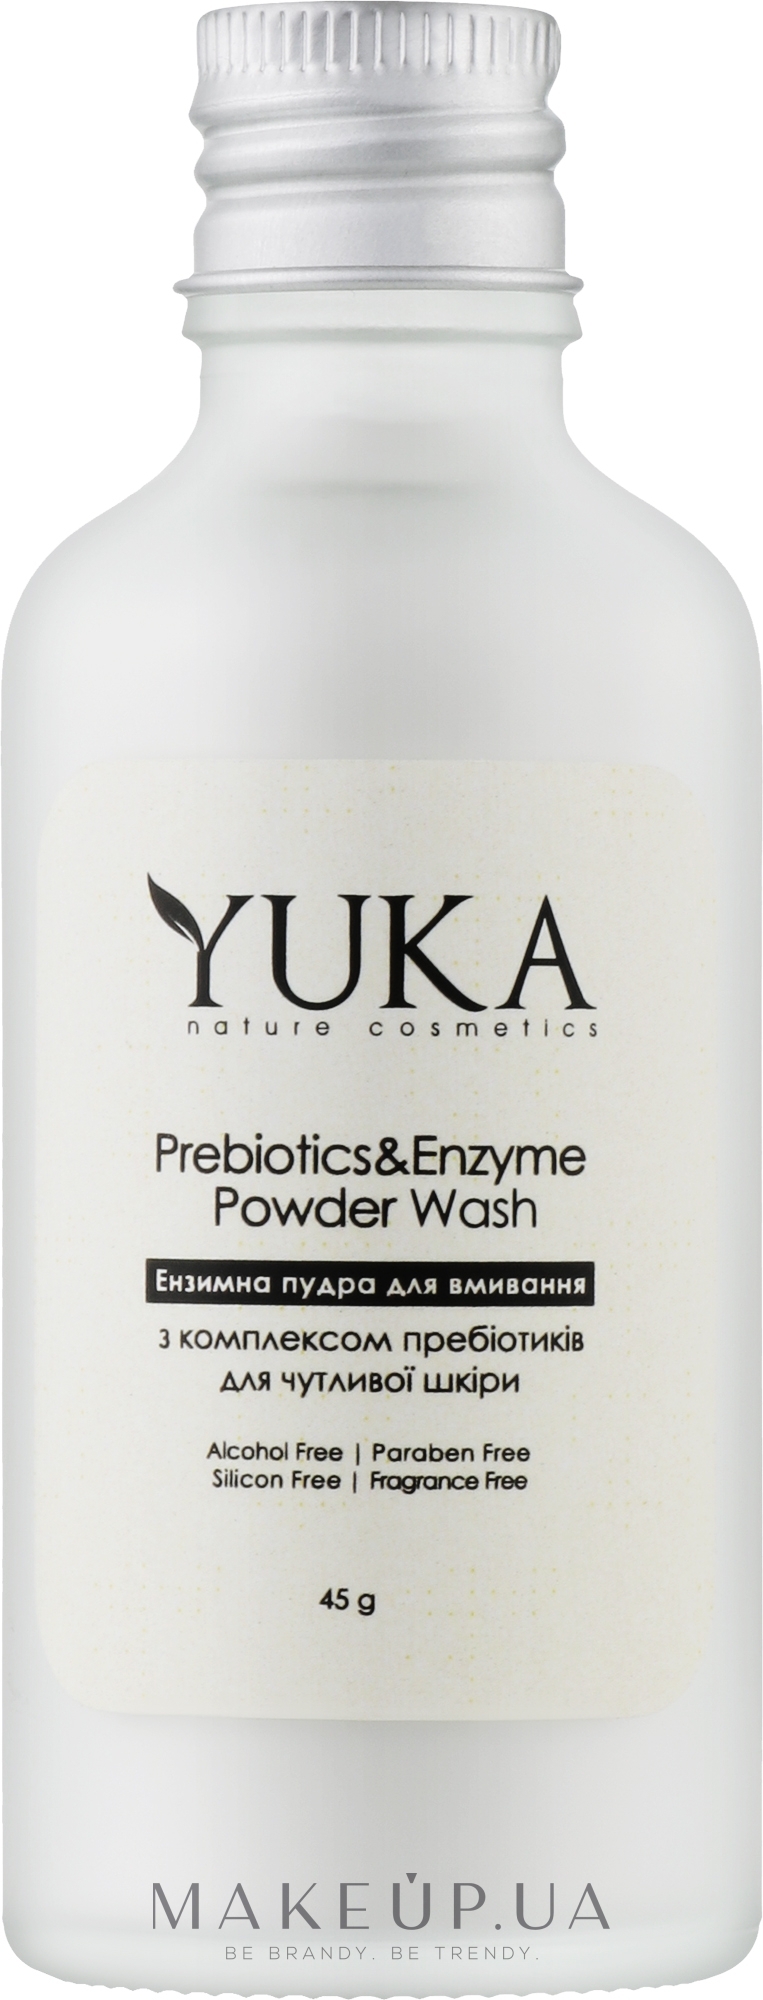 Энзимная пудра для умывания с пребиотиком для чувствительной кожи - Yuka Prebiotics&Enzyme Powder Wash — фото 45g